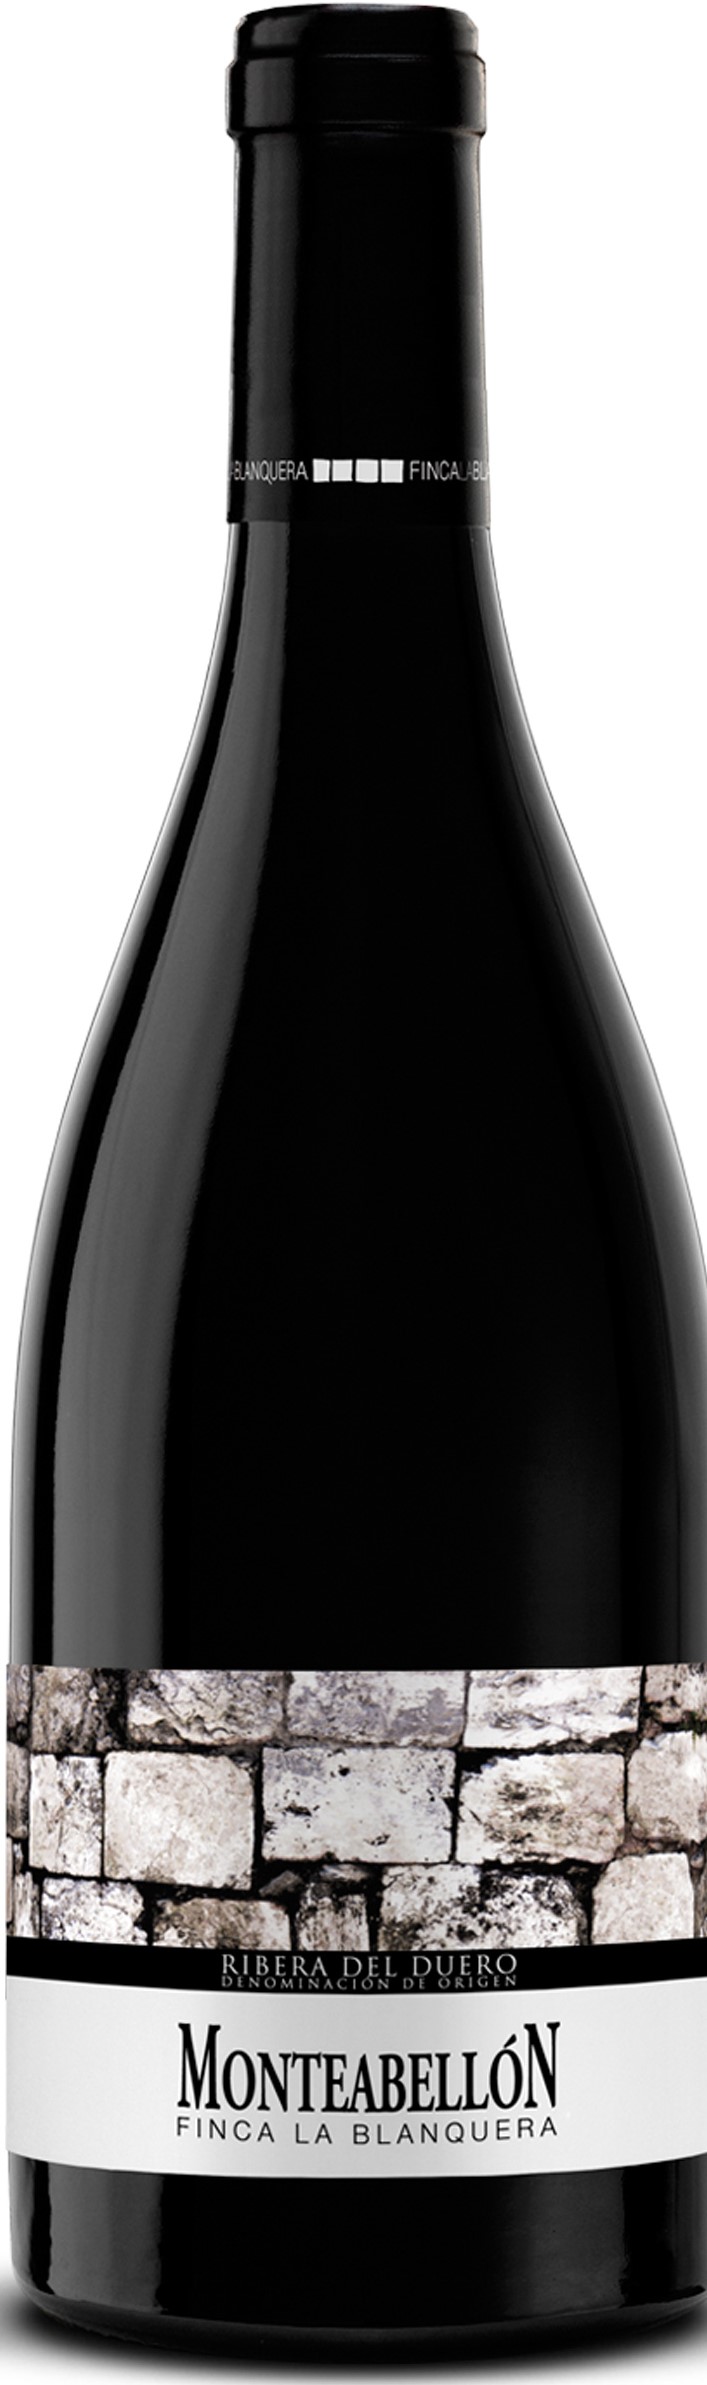 Imagen de la botella de Vino Monteabellón Finca La Blanquera